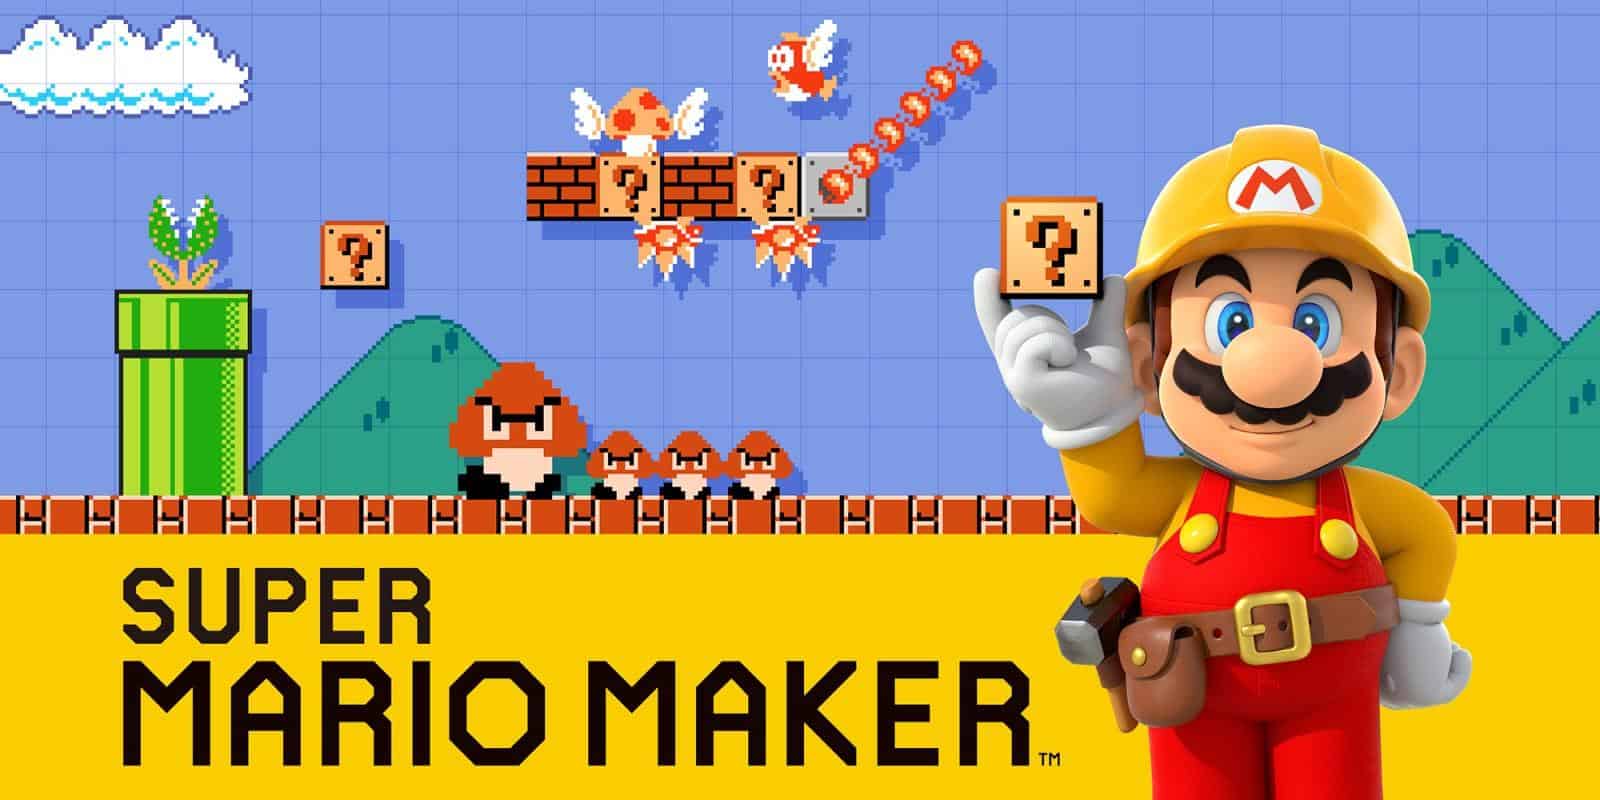 Super Mario Maker 1